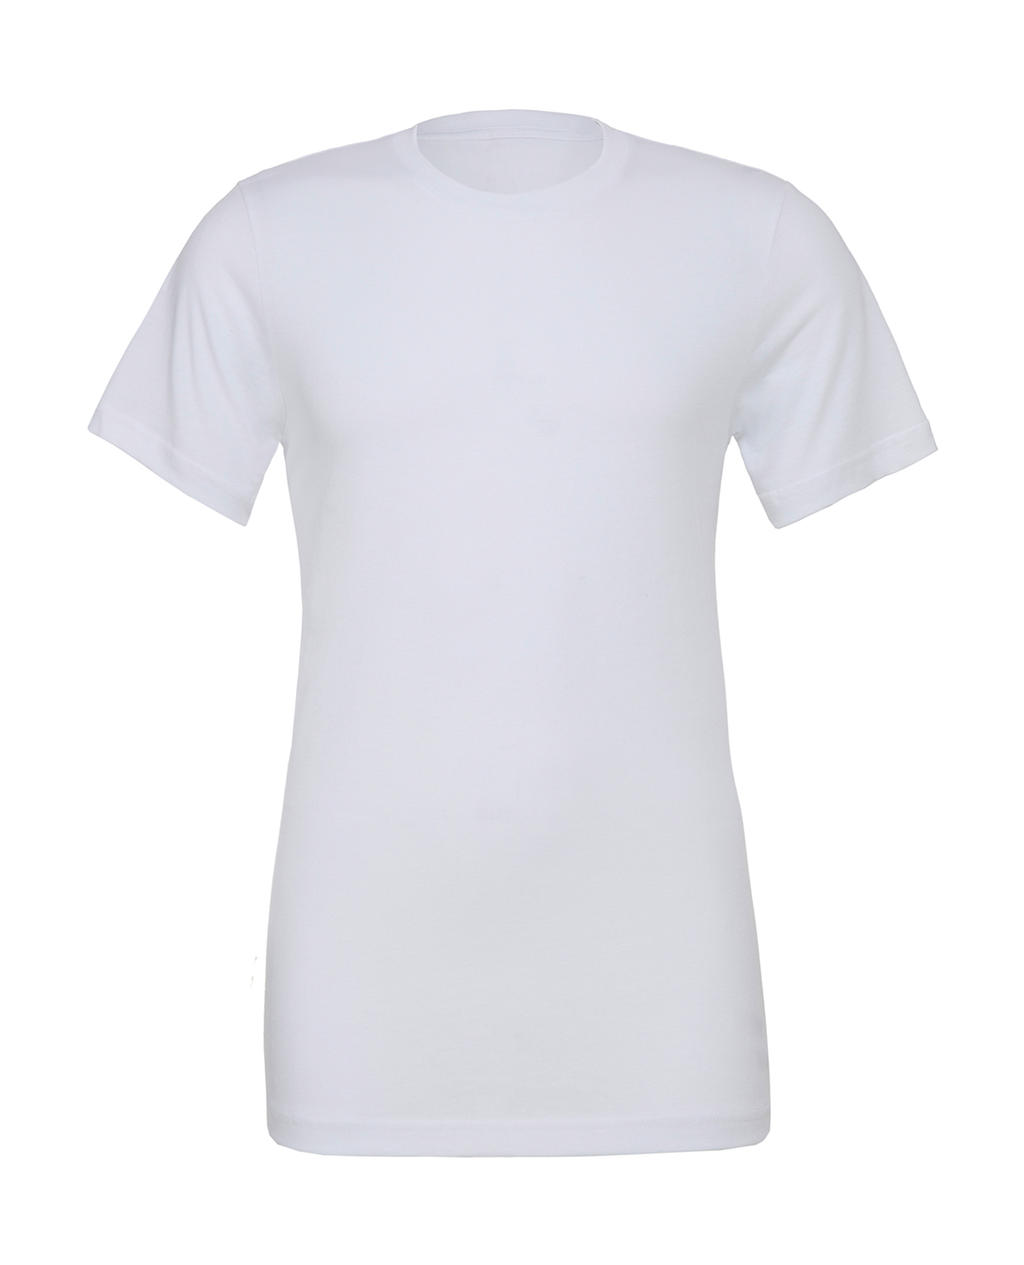 Unisex Poly-Cotton T-Shirt